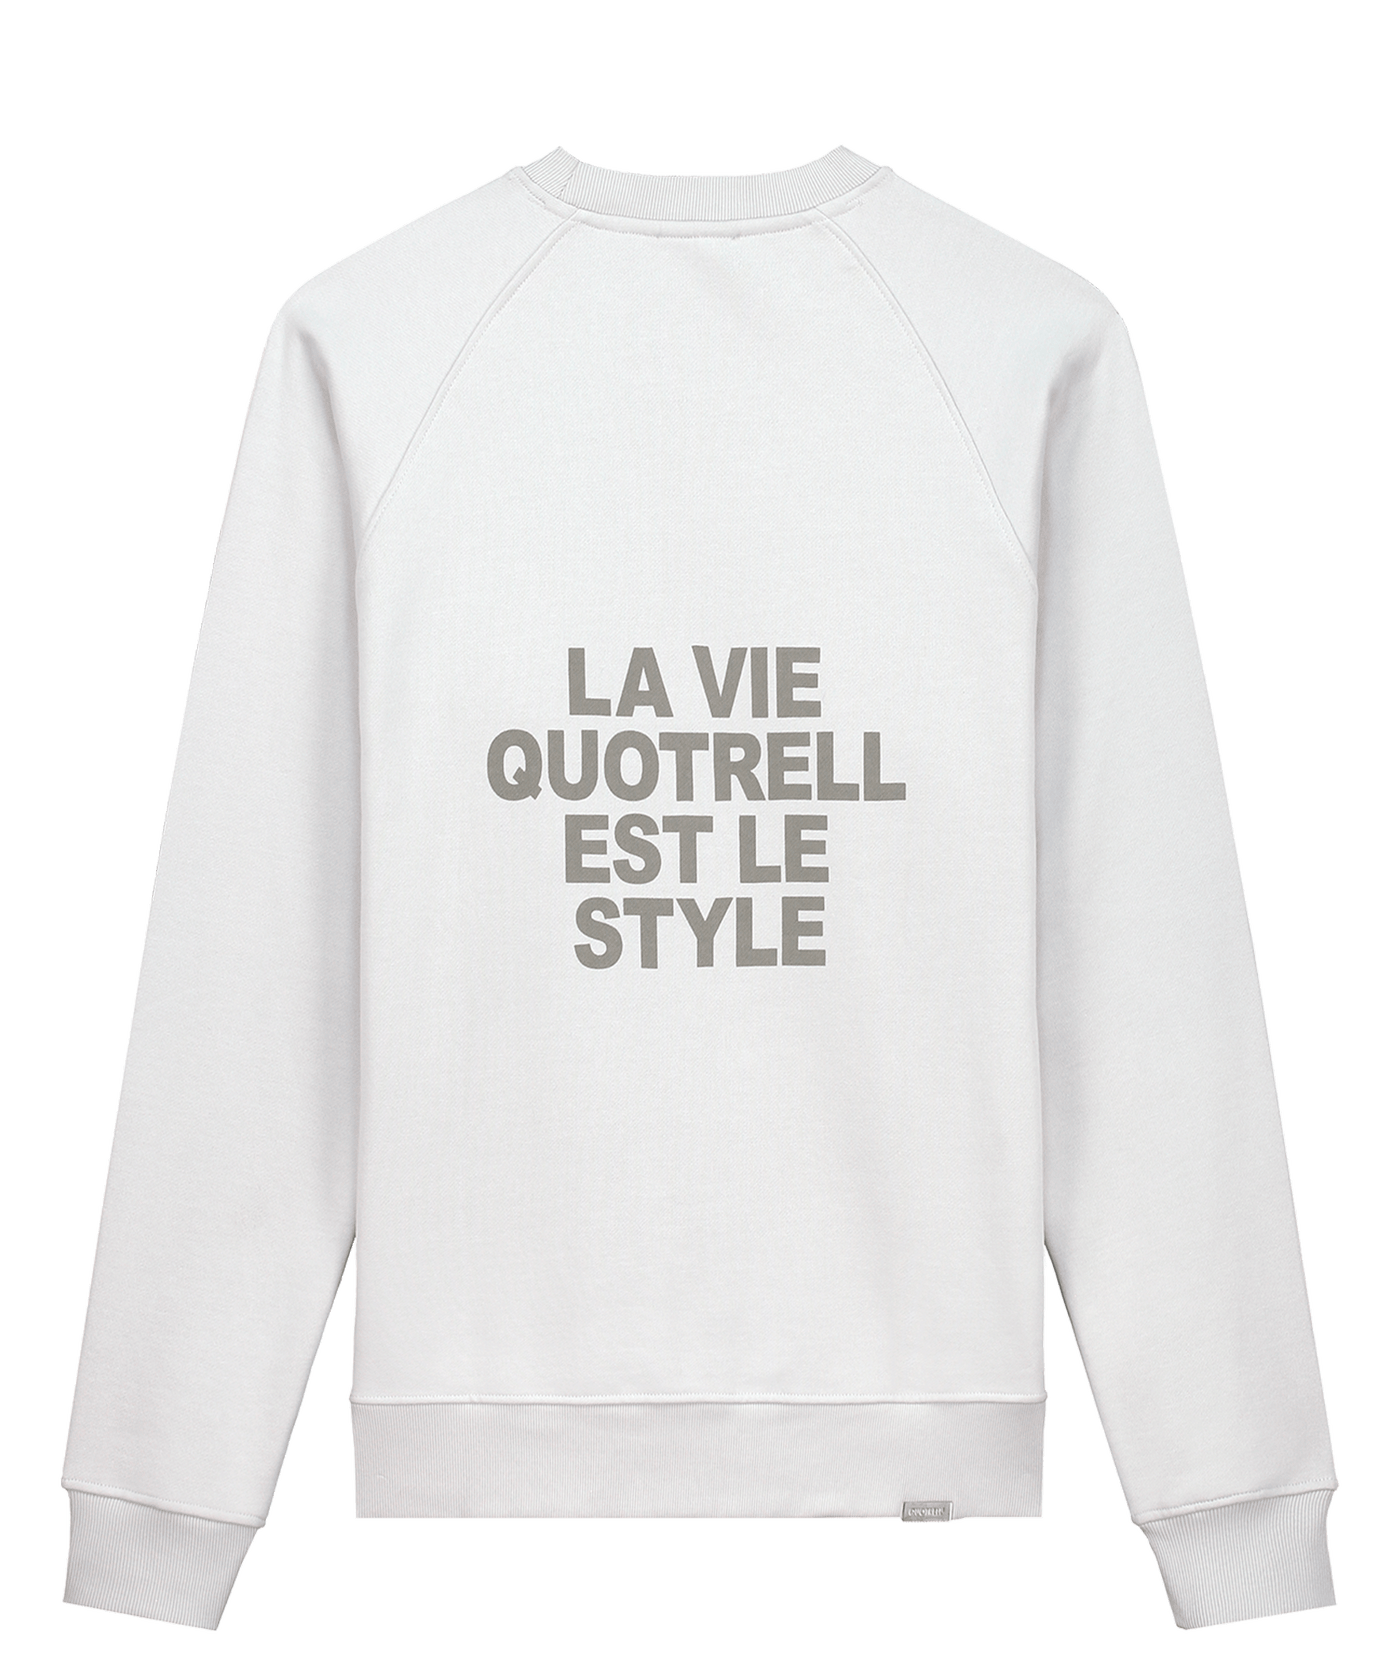 Quotrell - La Vie - Crewneck - Cement/concrete